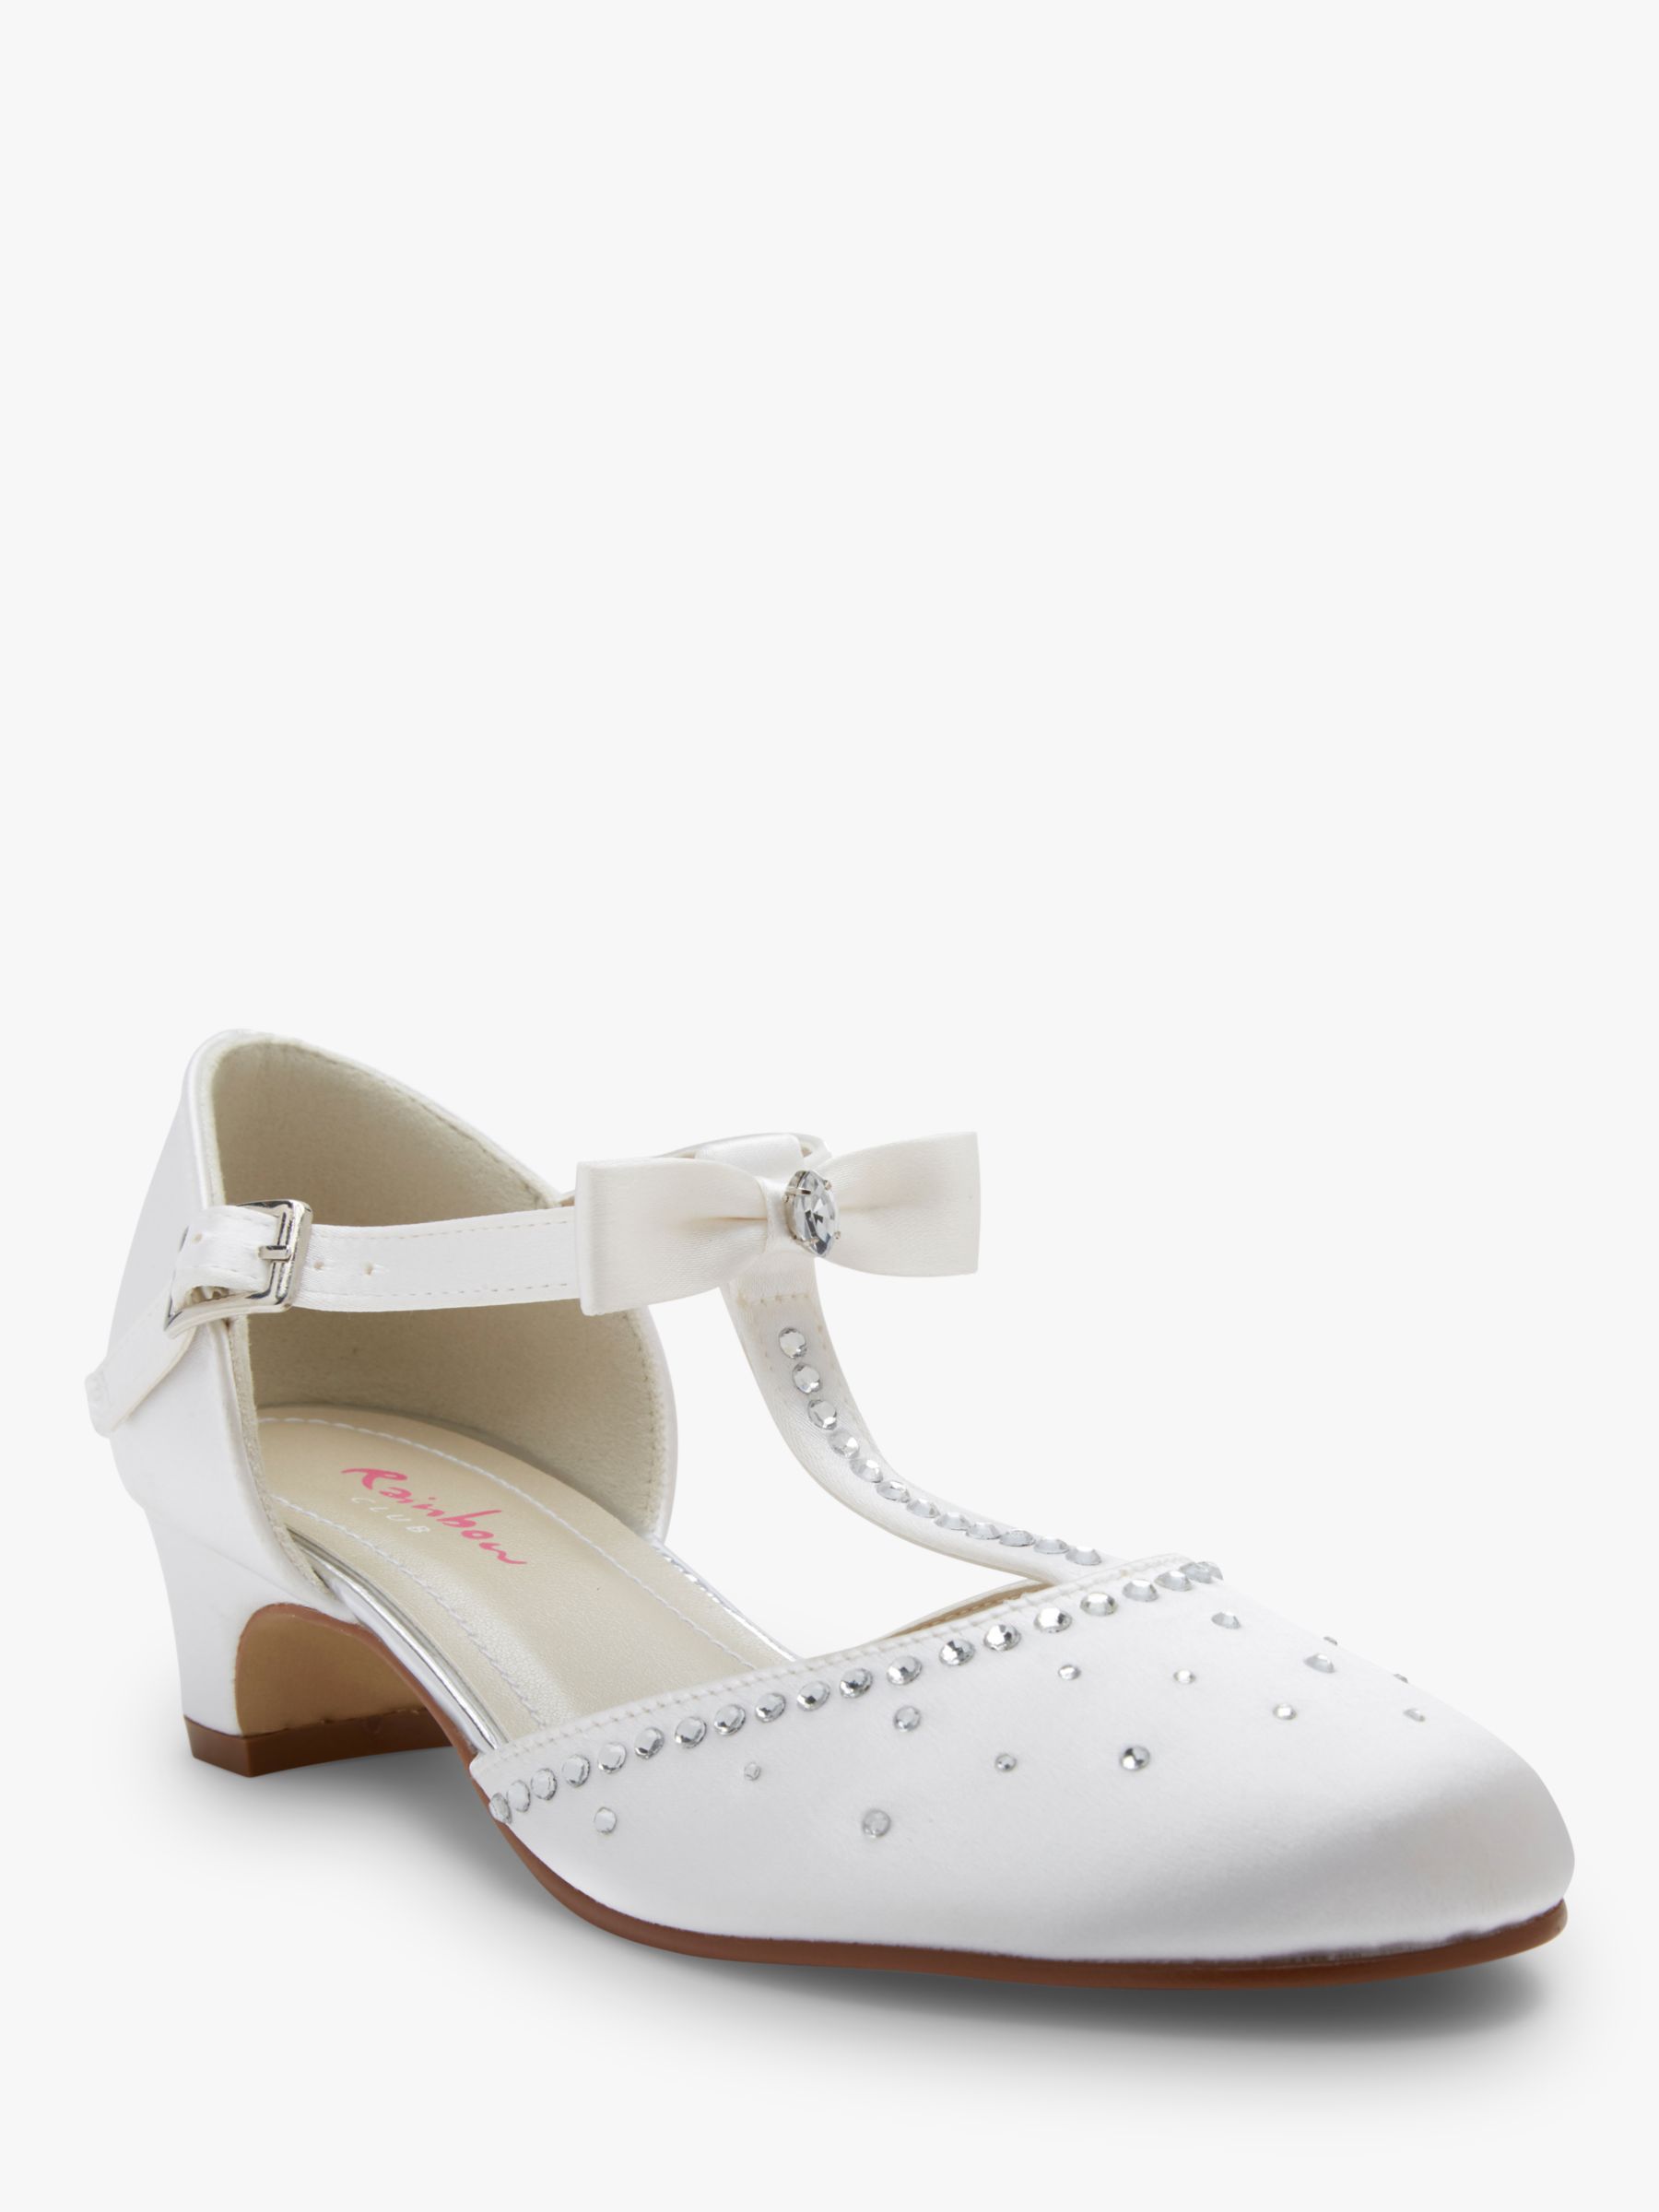 Rainbow Club Lemonade Bridesmaid Shoes, White Communion, 10 Jnr